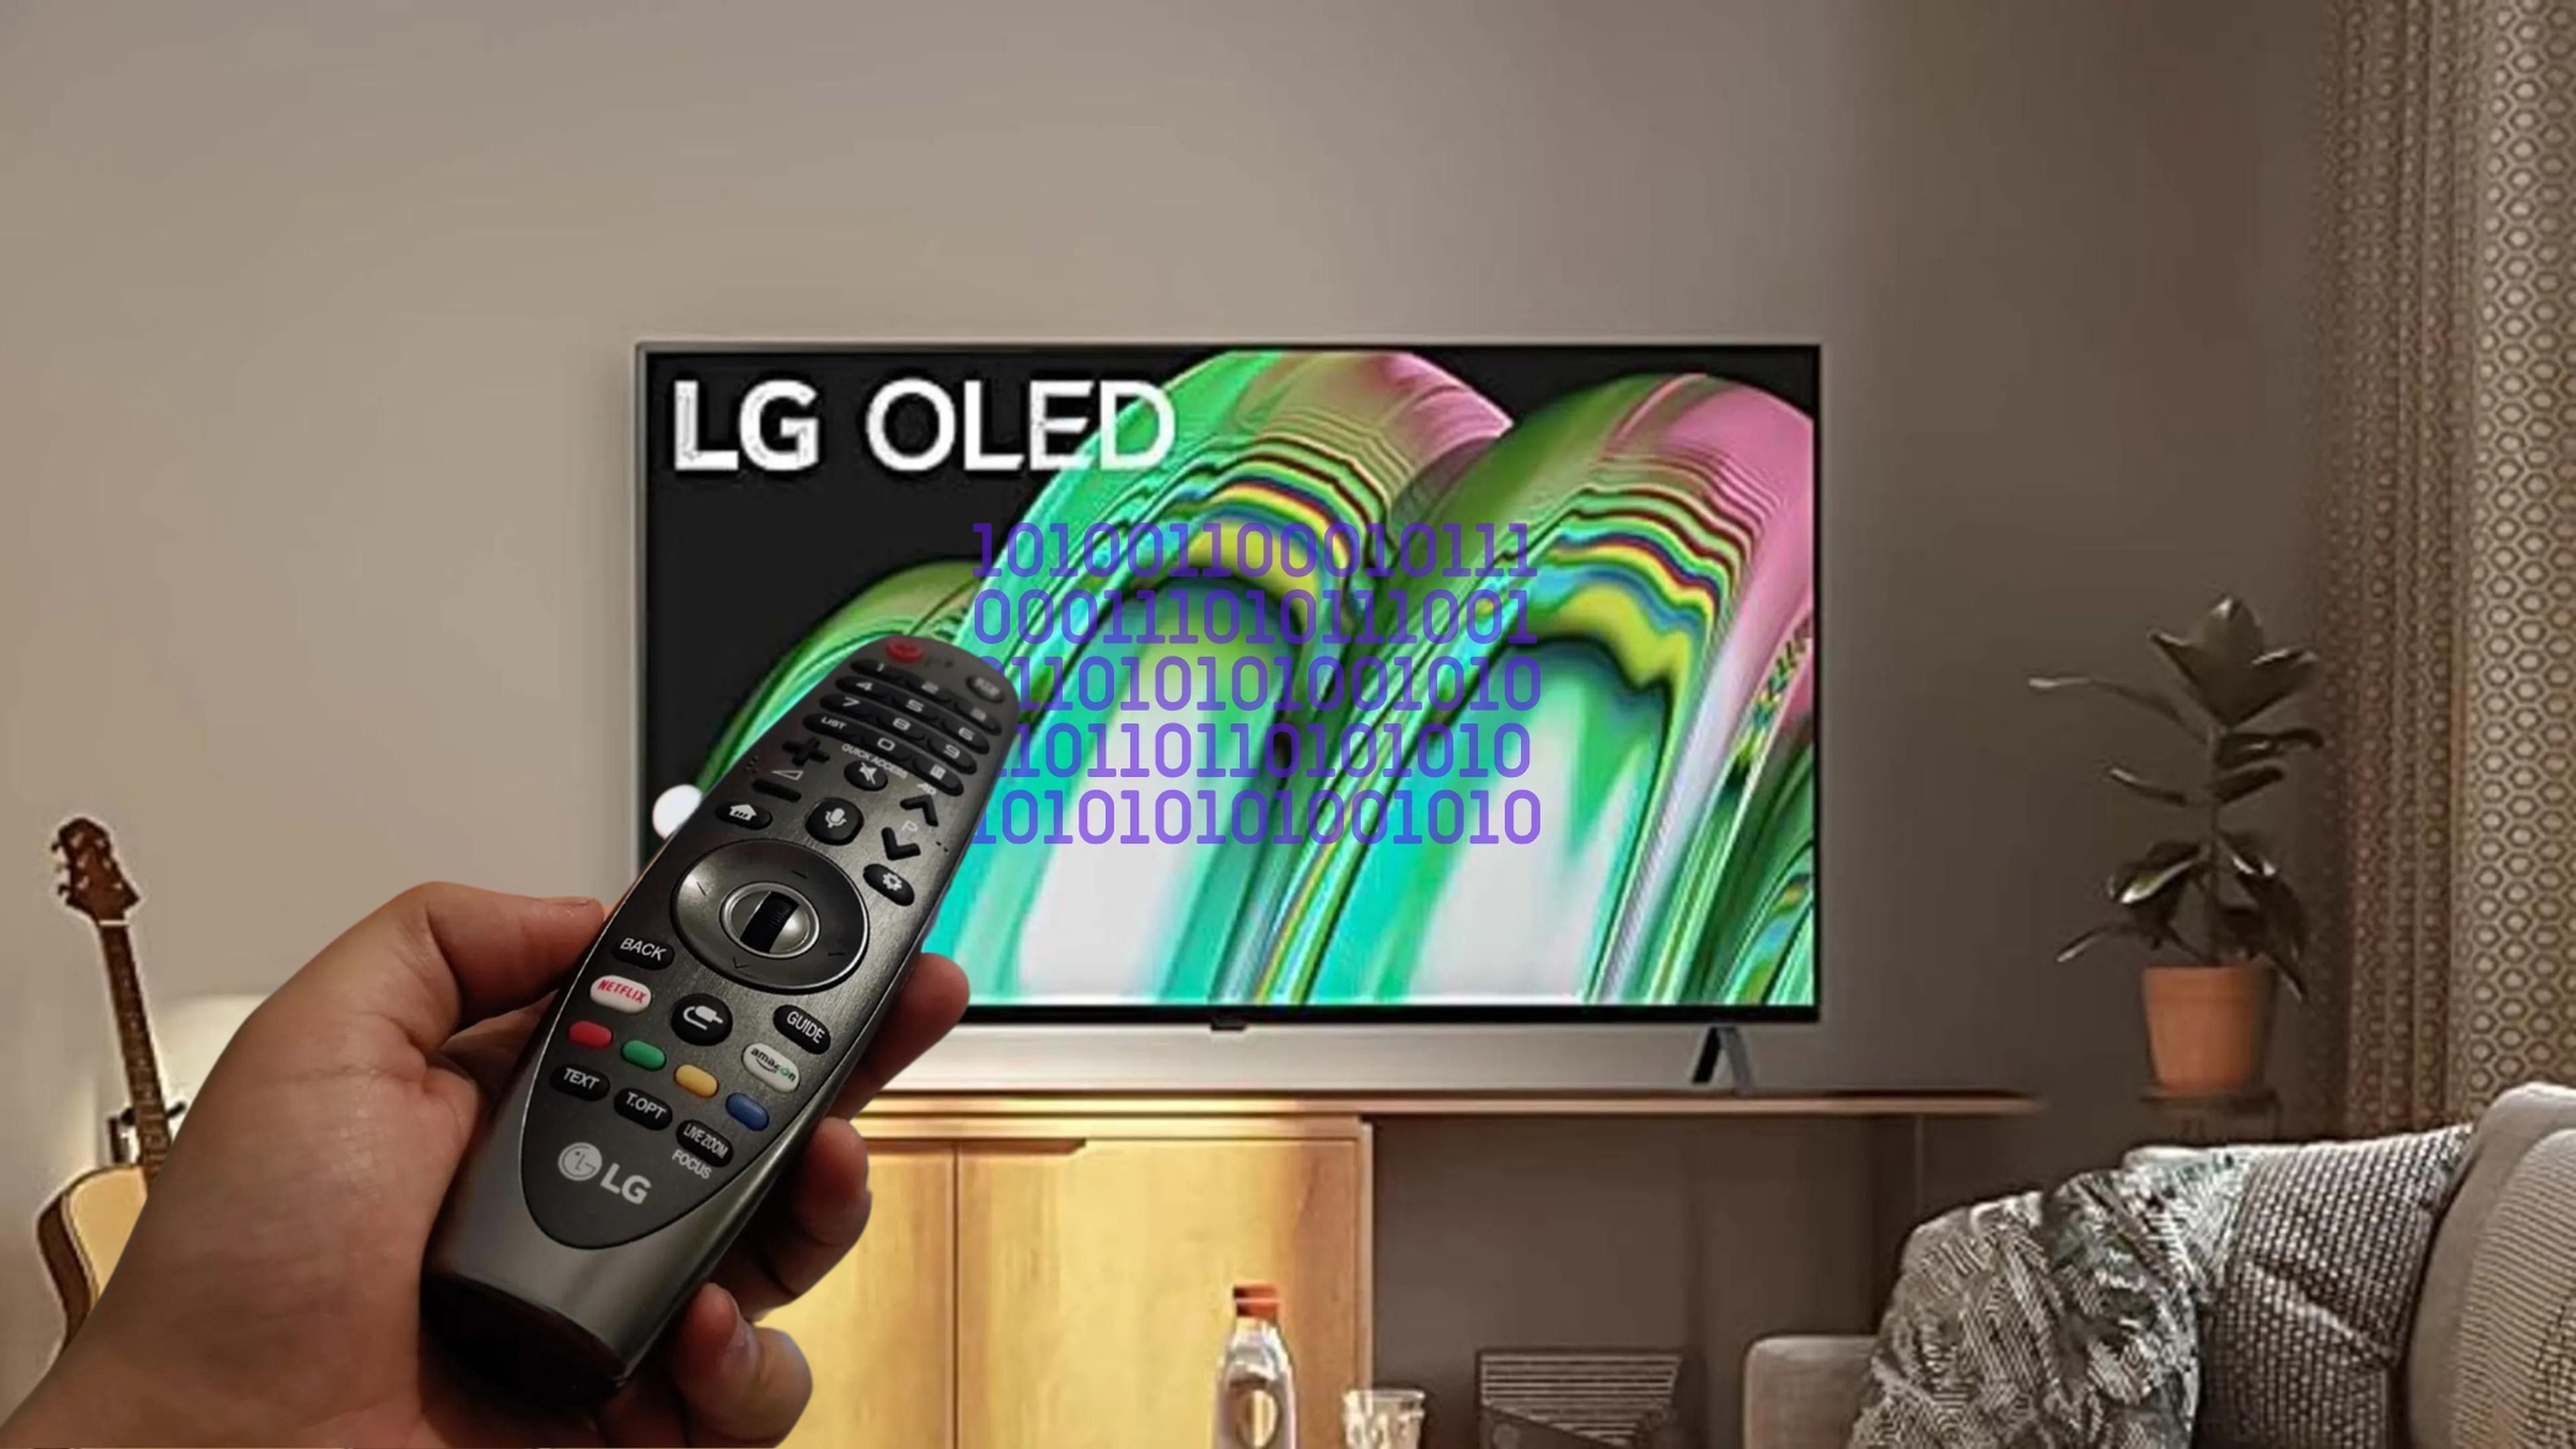 Menús ocultos y códigos secretos de los Smart TV de LG